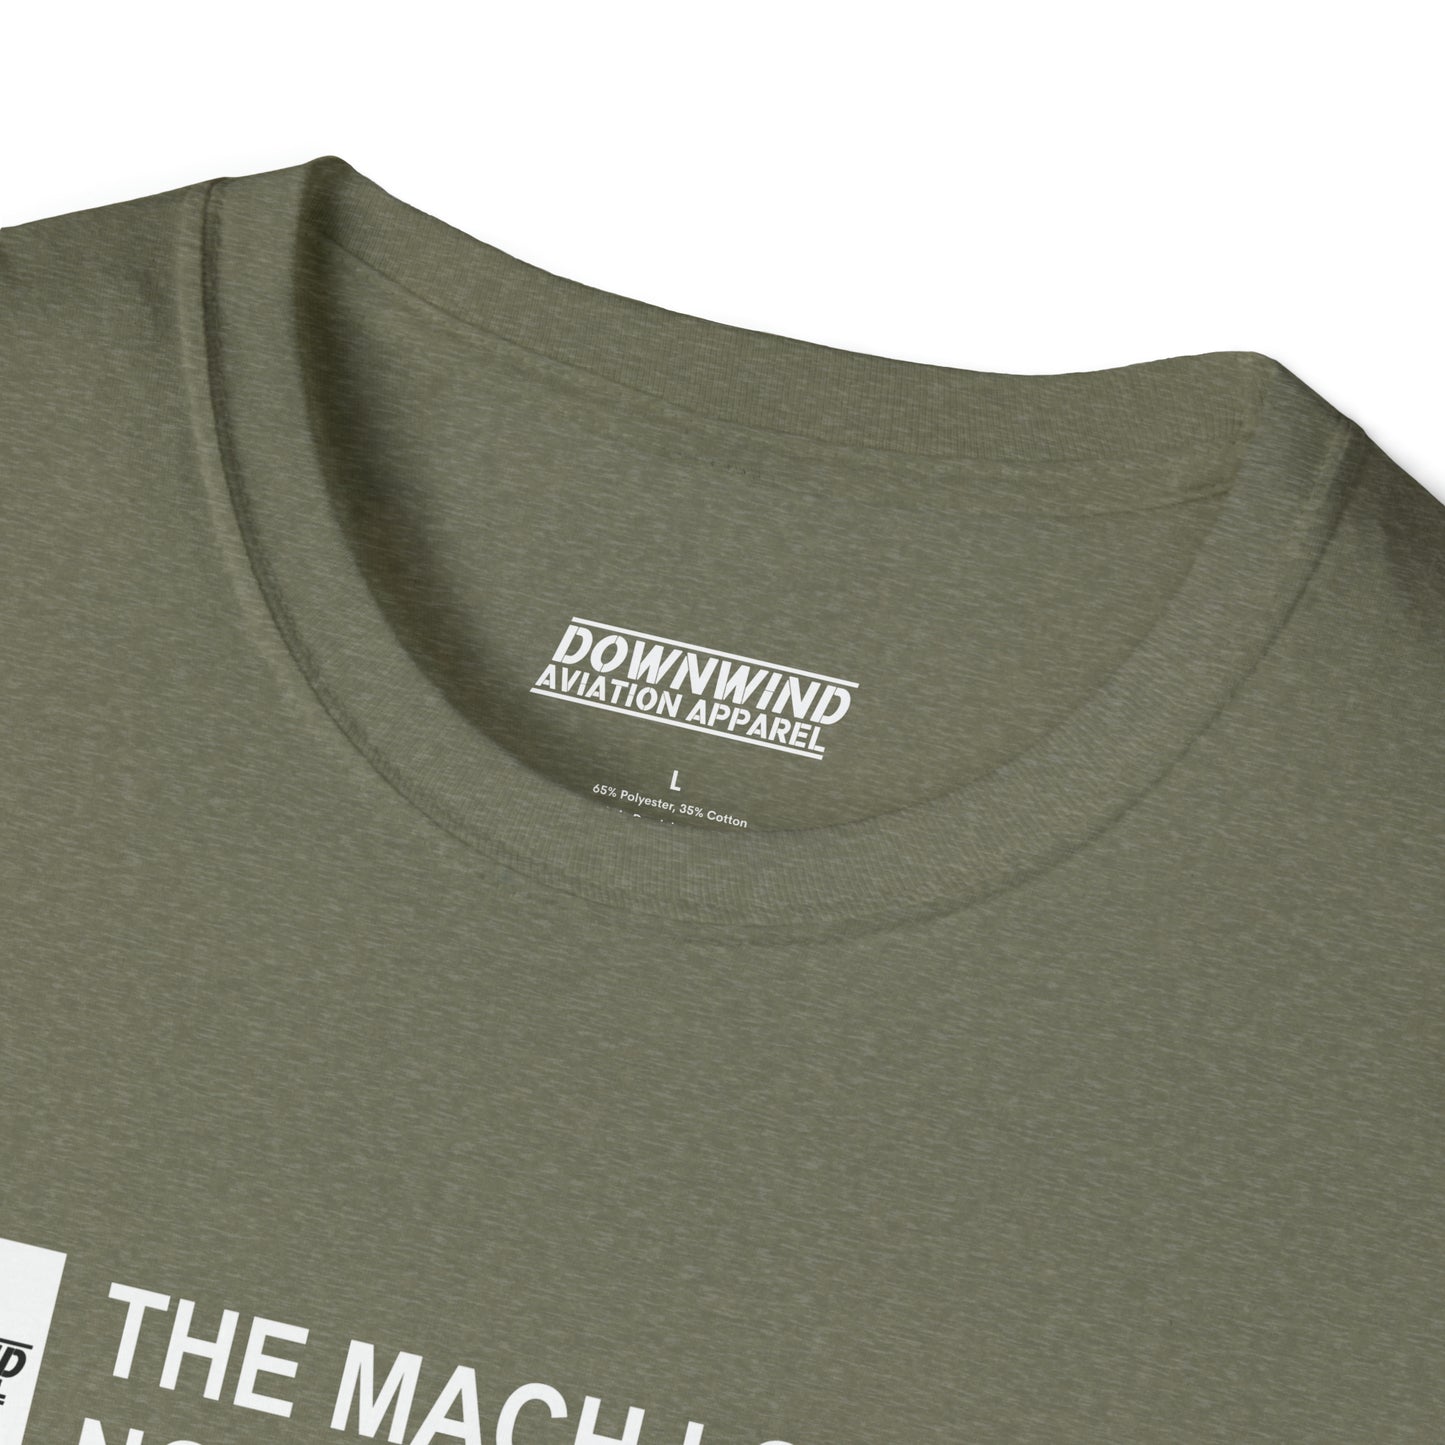 The Mach Loop / North Wales T-Shirt